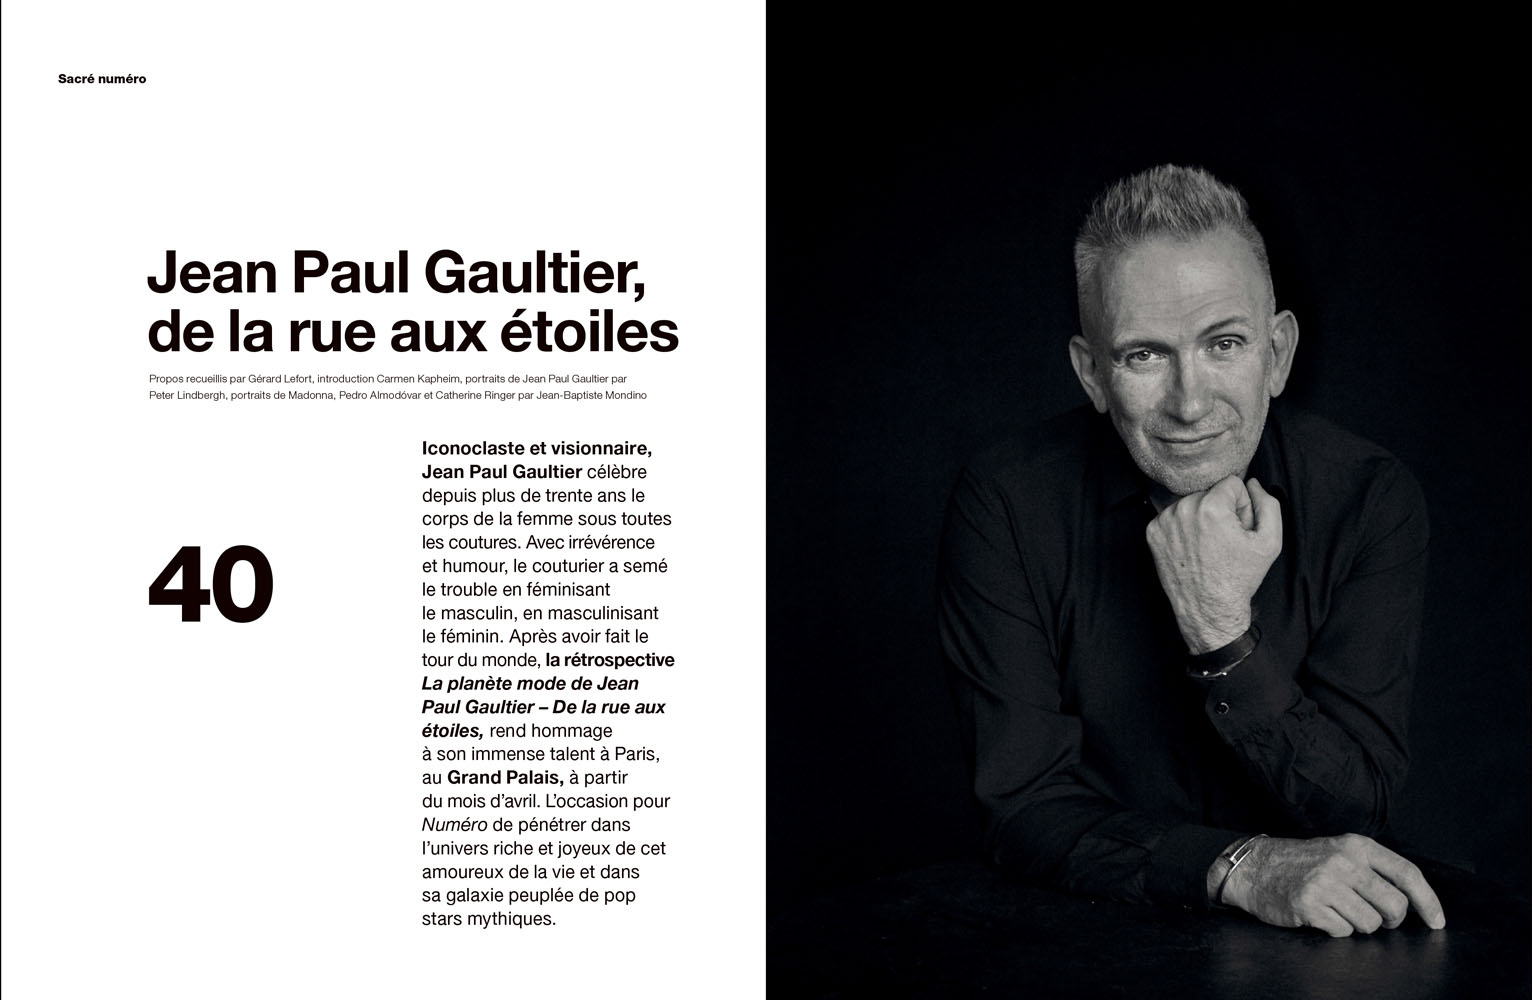 Jean Paul Gaultier Poses for Numéro Images